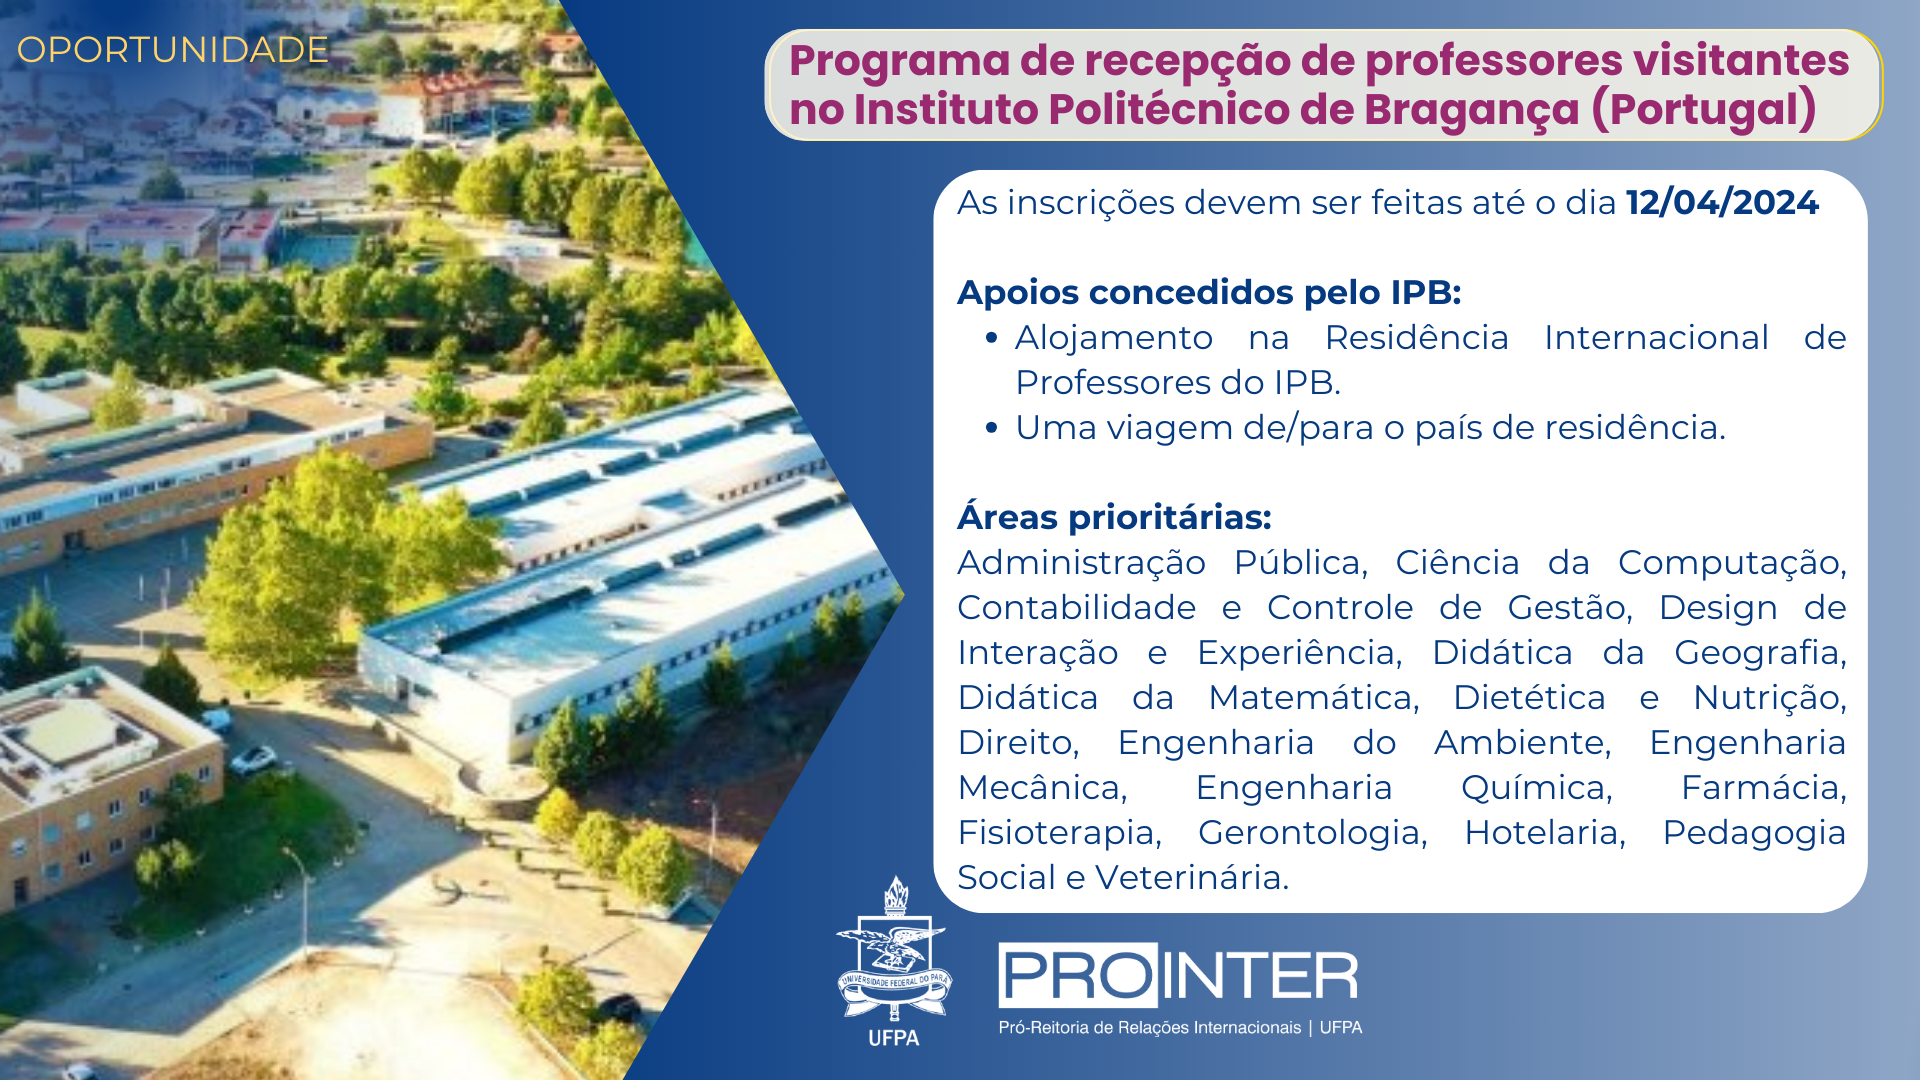 Programa de recepção de professores visitantes no Instituto Politécnico de Bragança - Edital 24/25